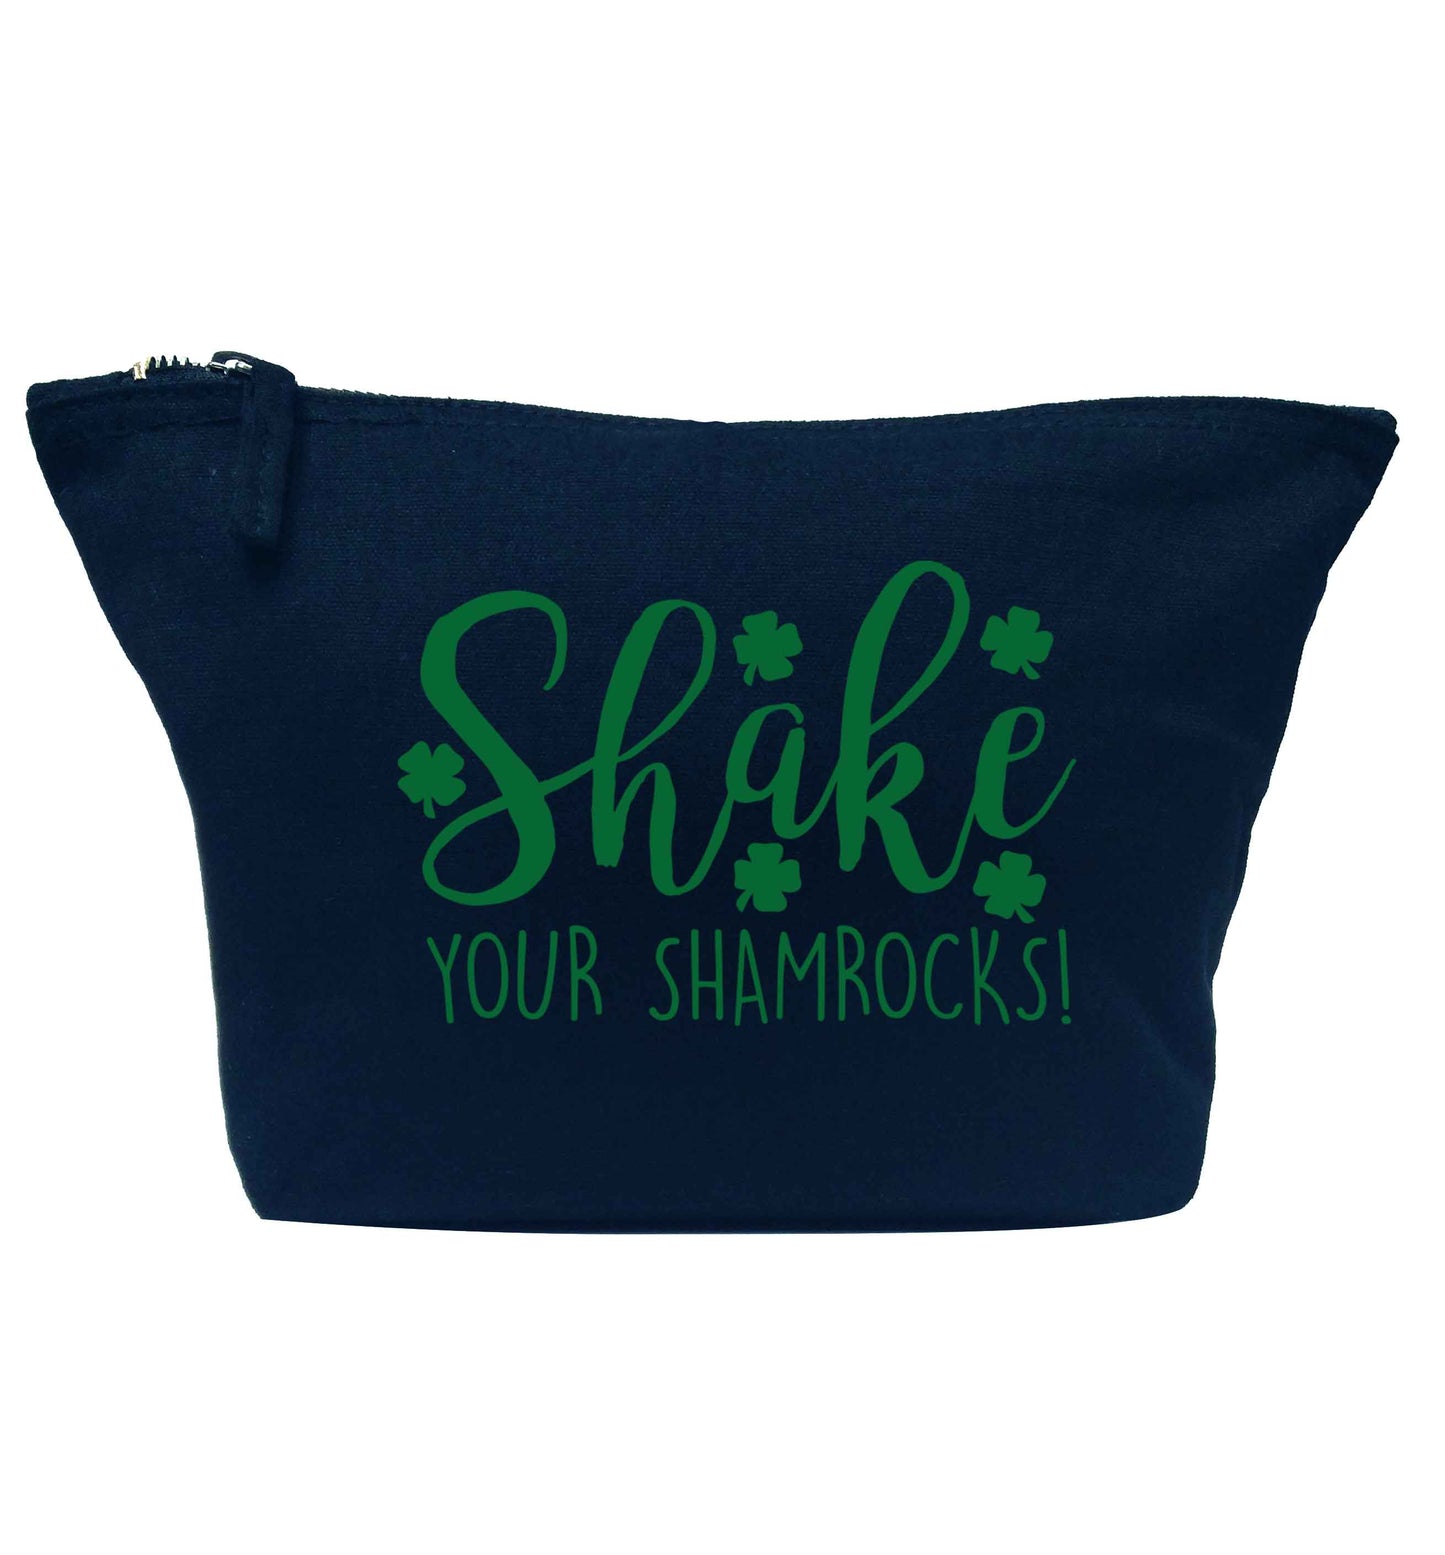 Shake your shamrocks navy makeup bag